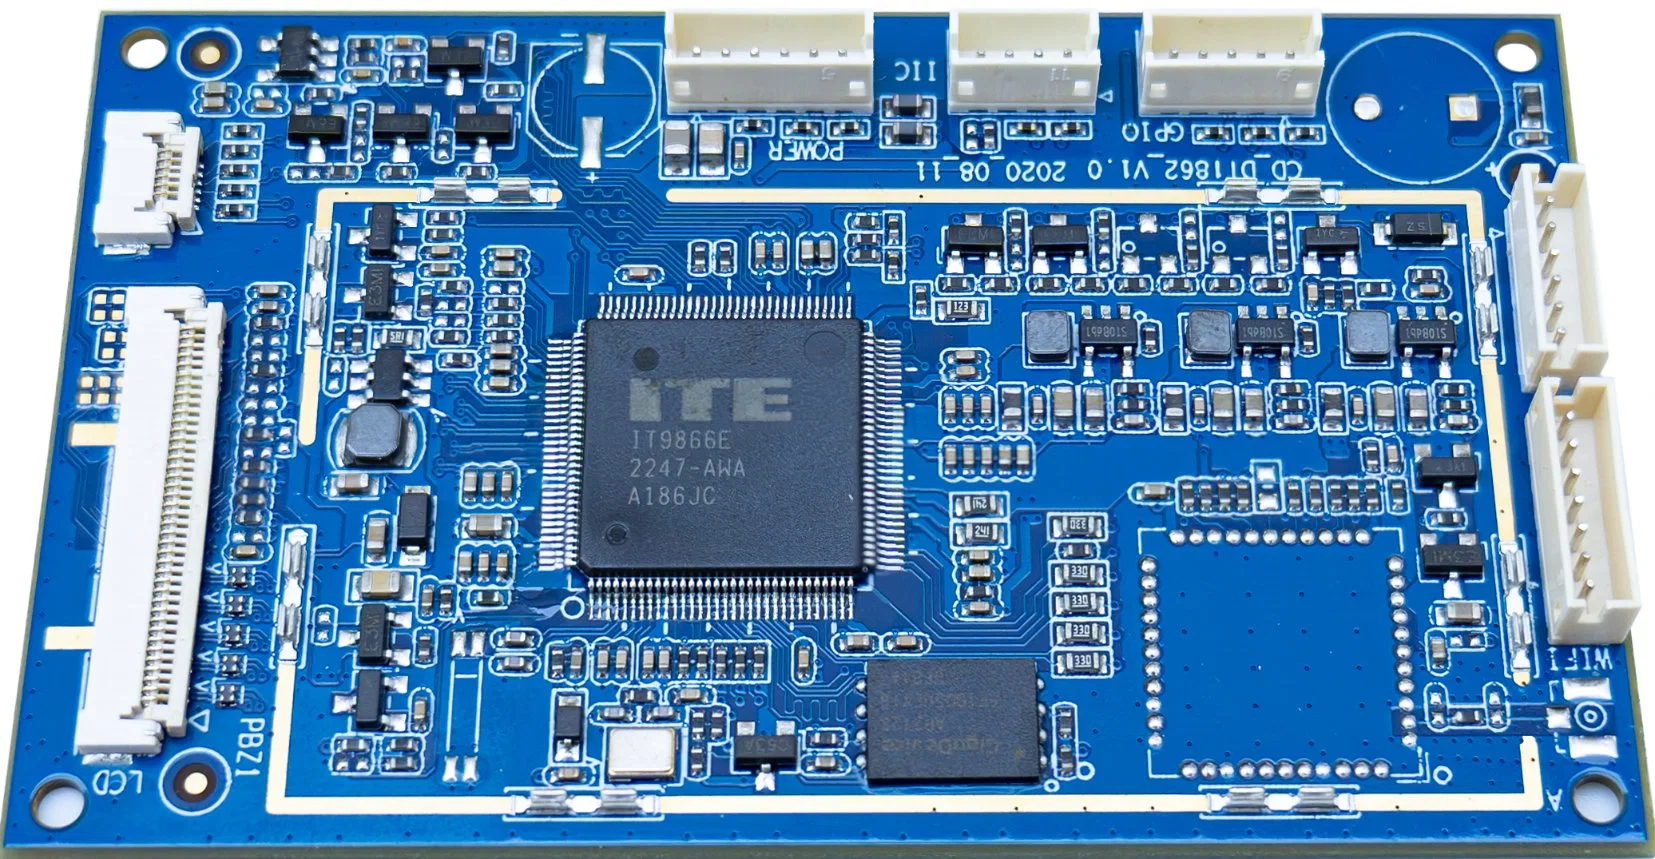 Placa de circuito PCBA profissional personalizada com Mtk8168 incorporado (Mediatek Inc.), suportando Android, WiFi e Bluetooth.